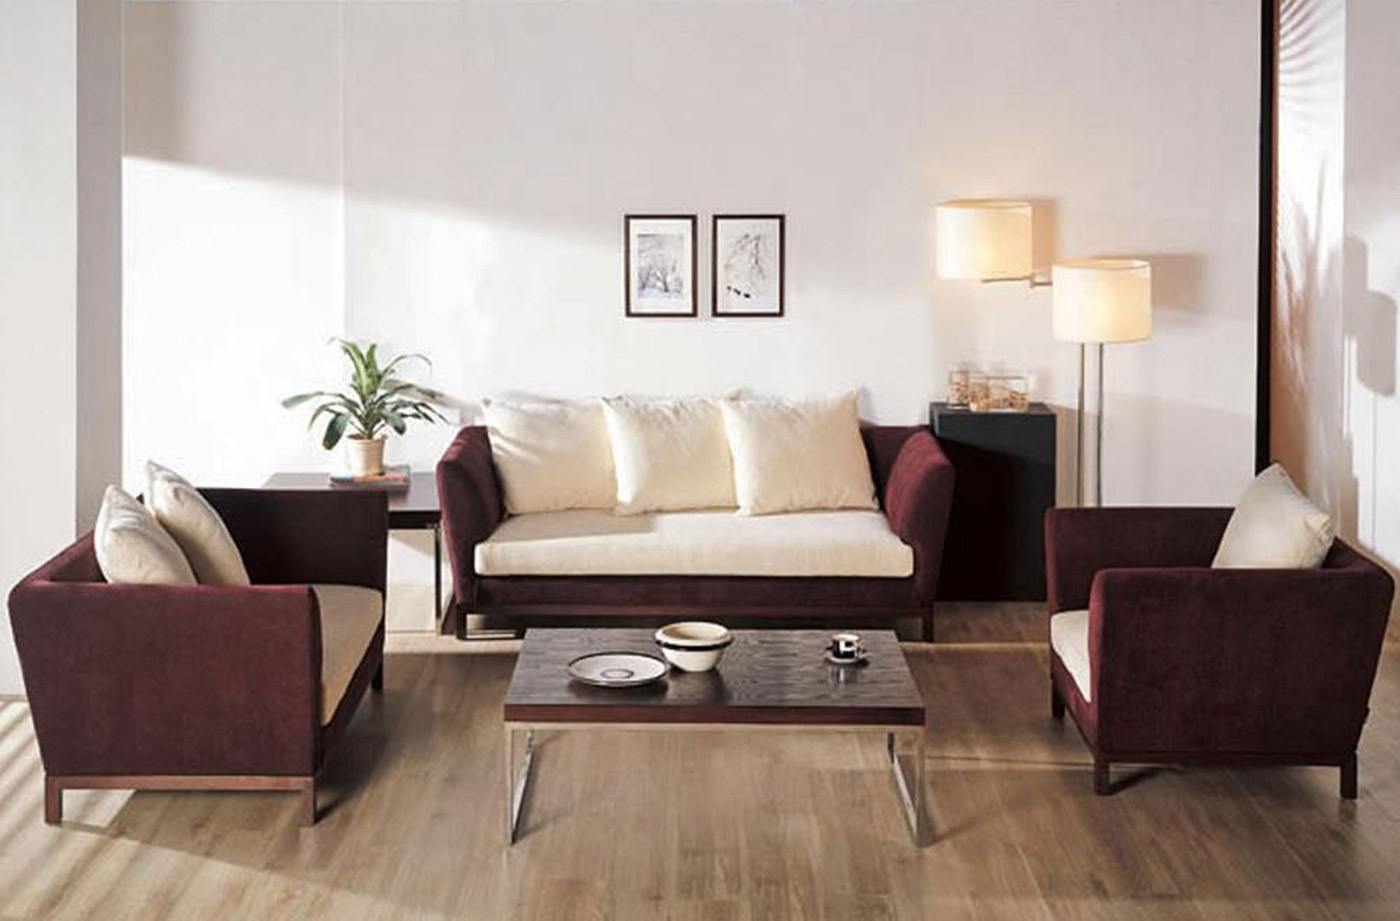 Minimalist Living Room Furniture
 Find Suitable Living Room Furniture With Your Style